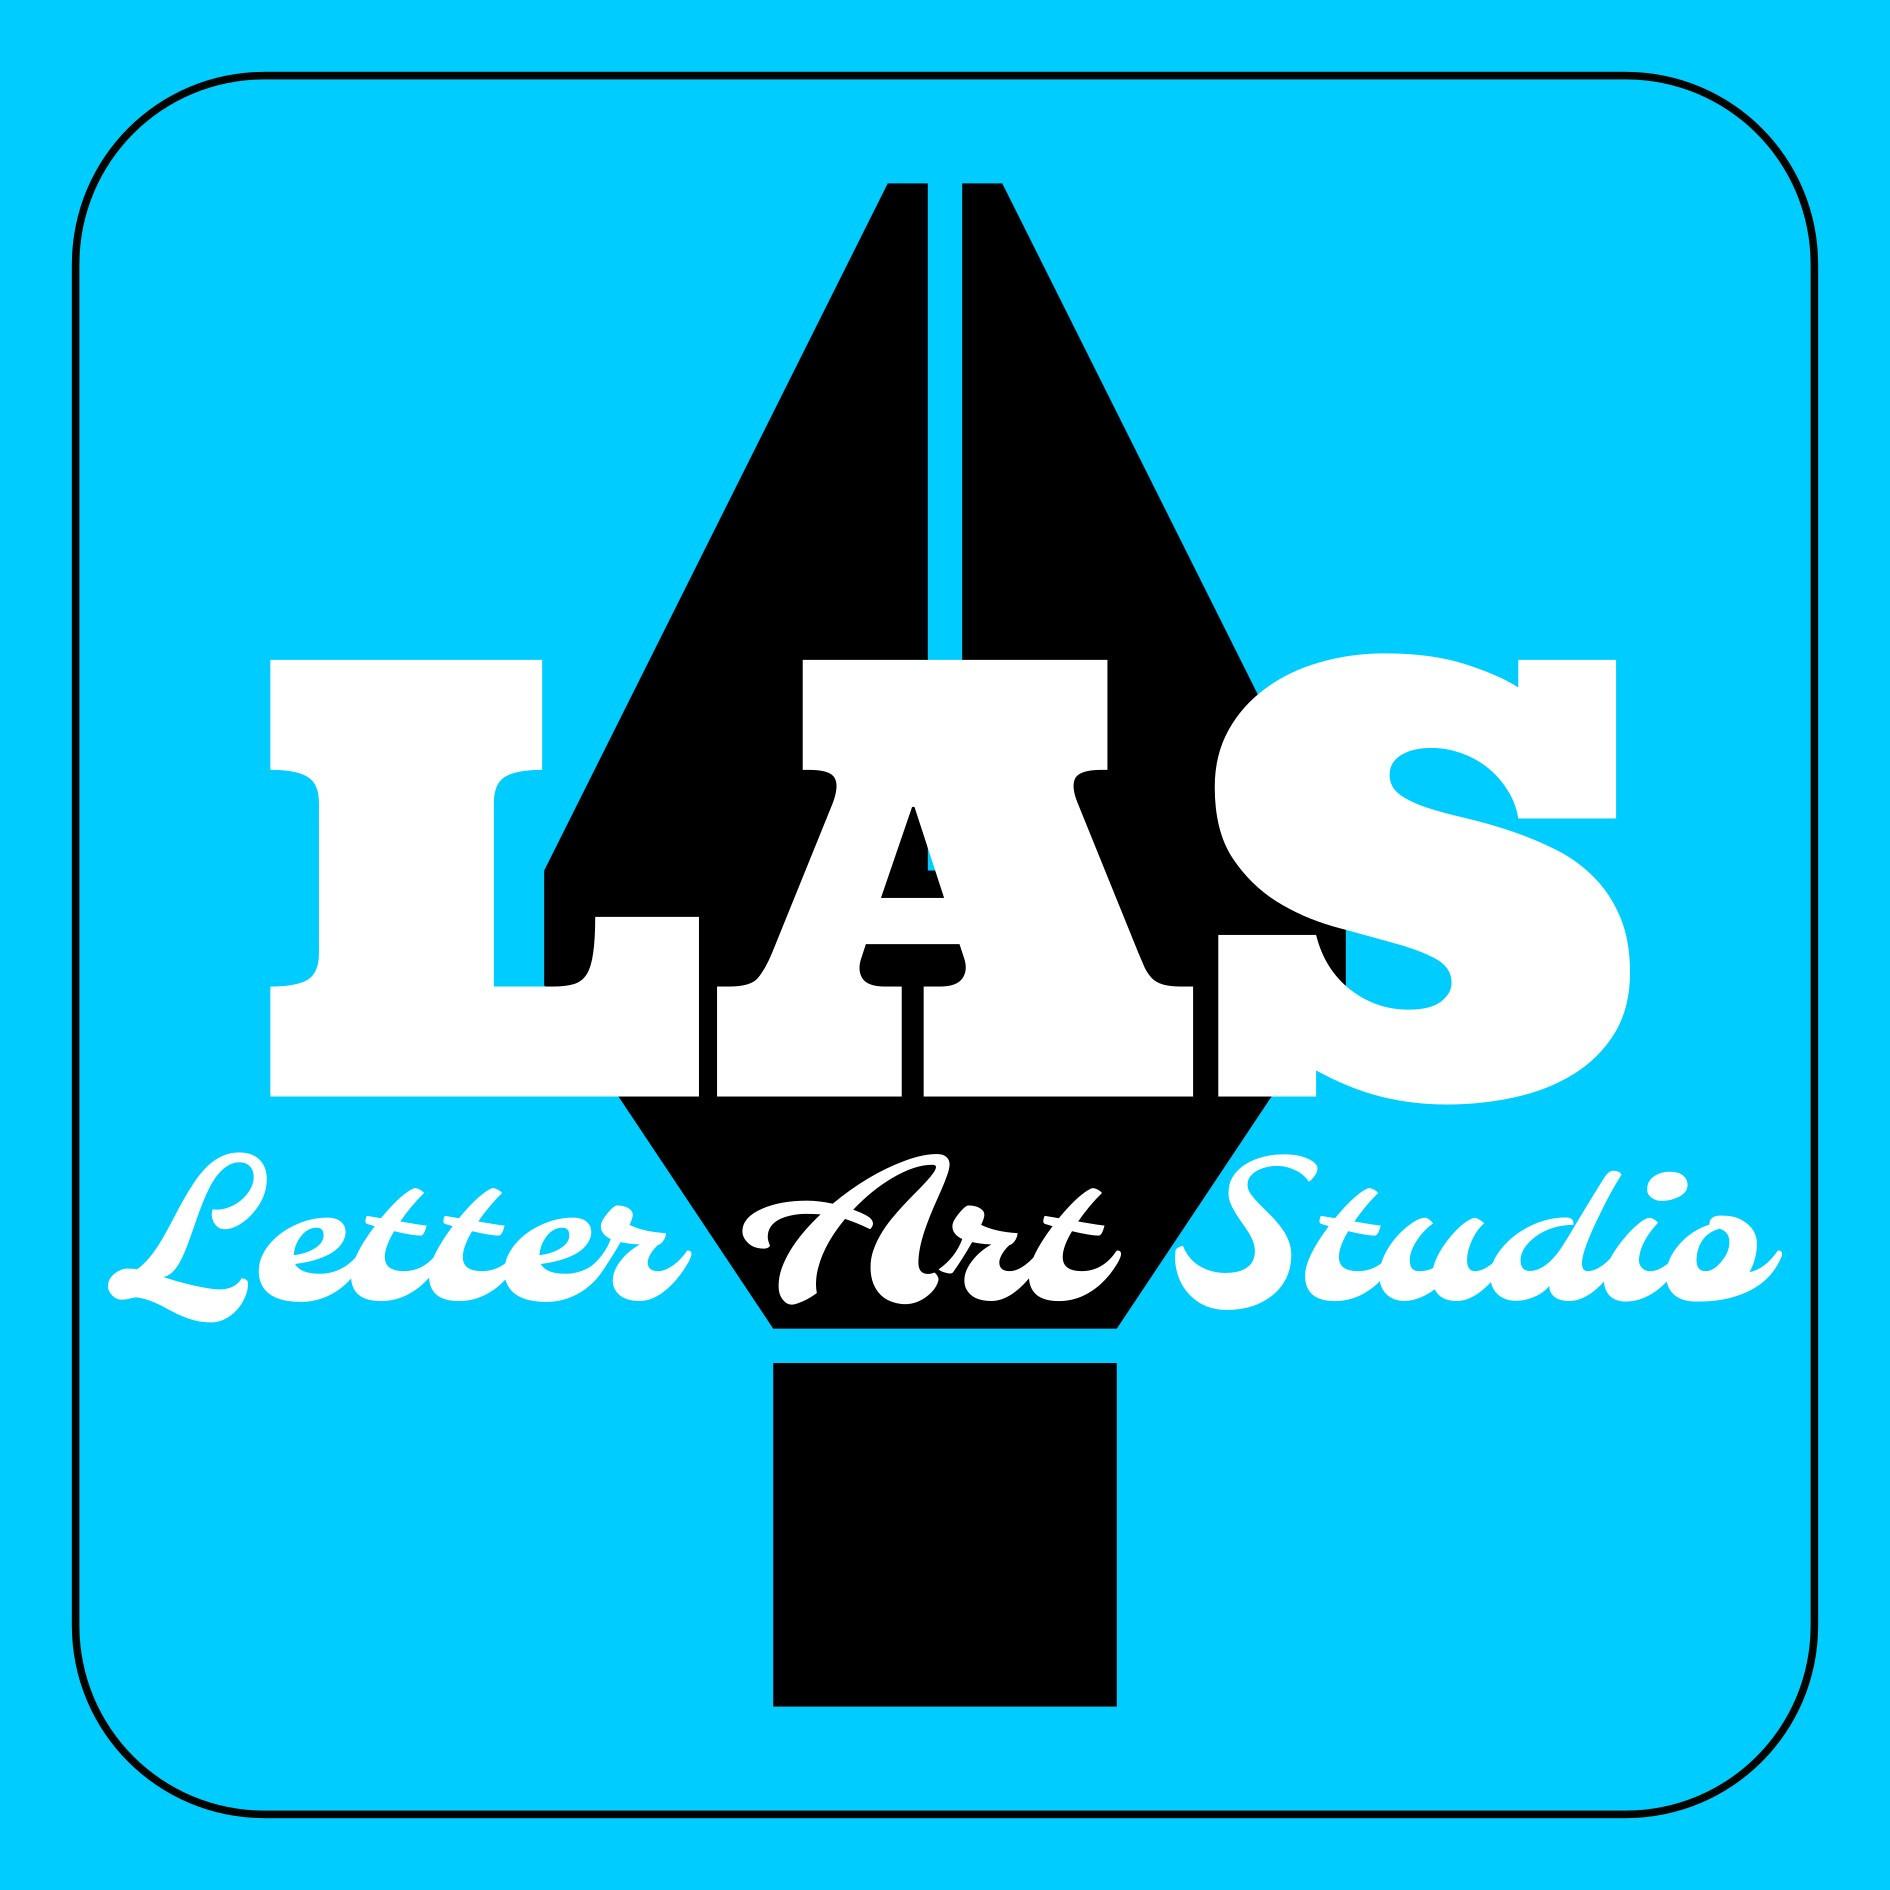 Letter art studio